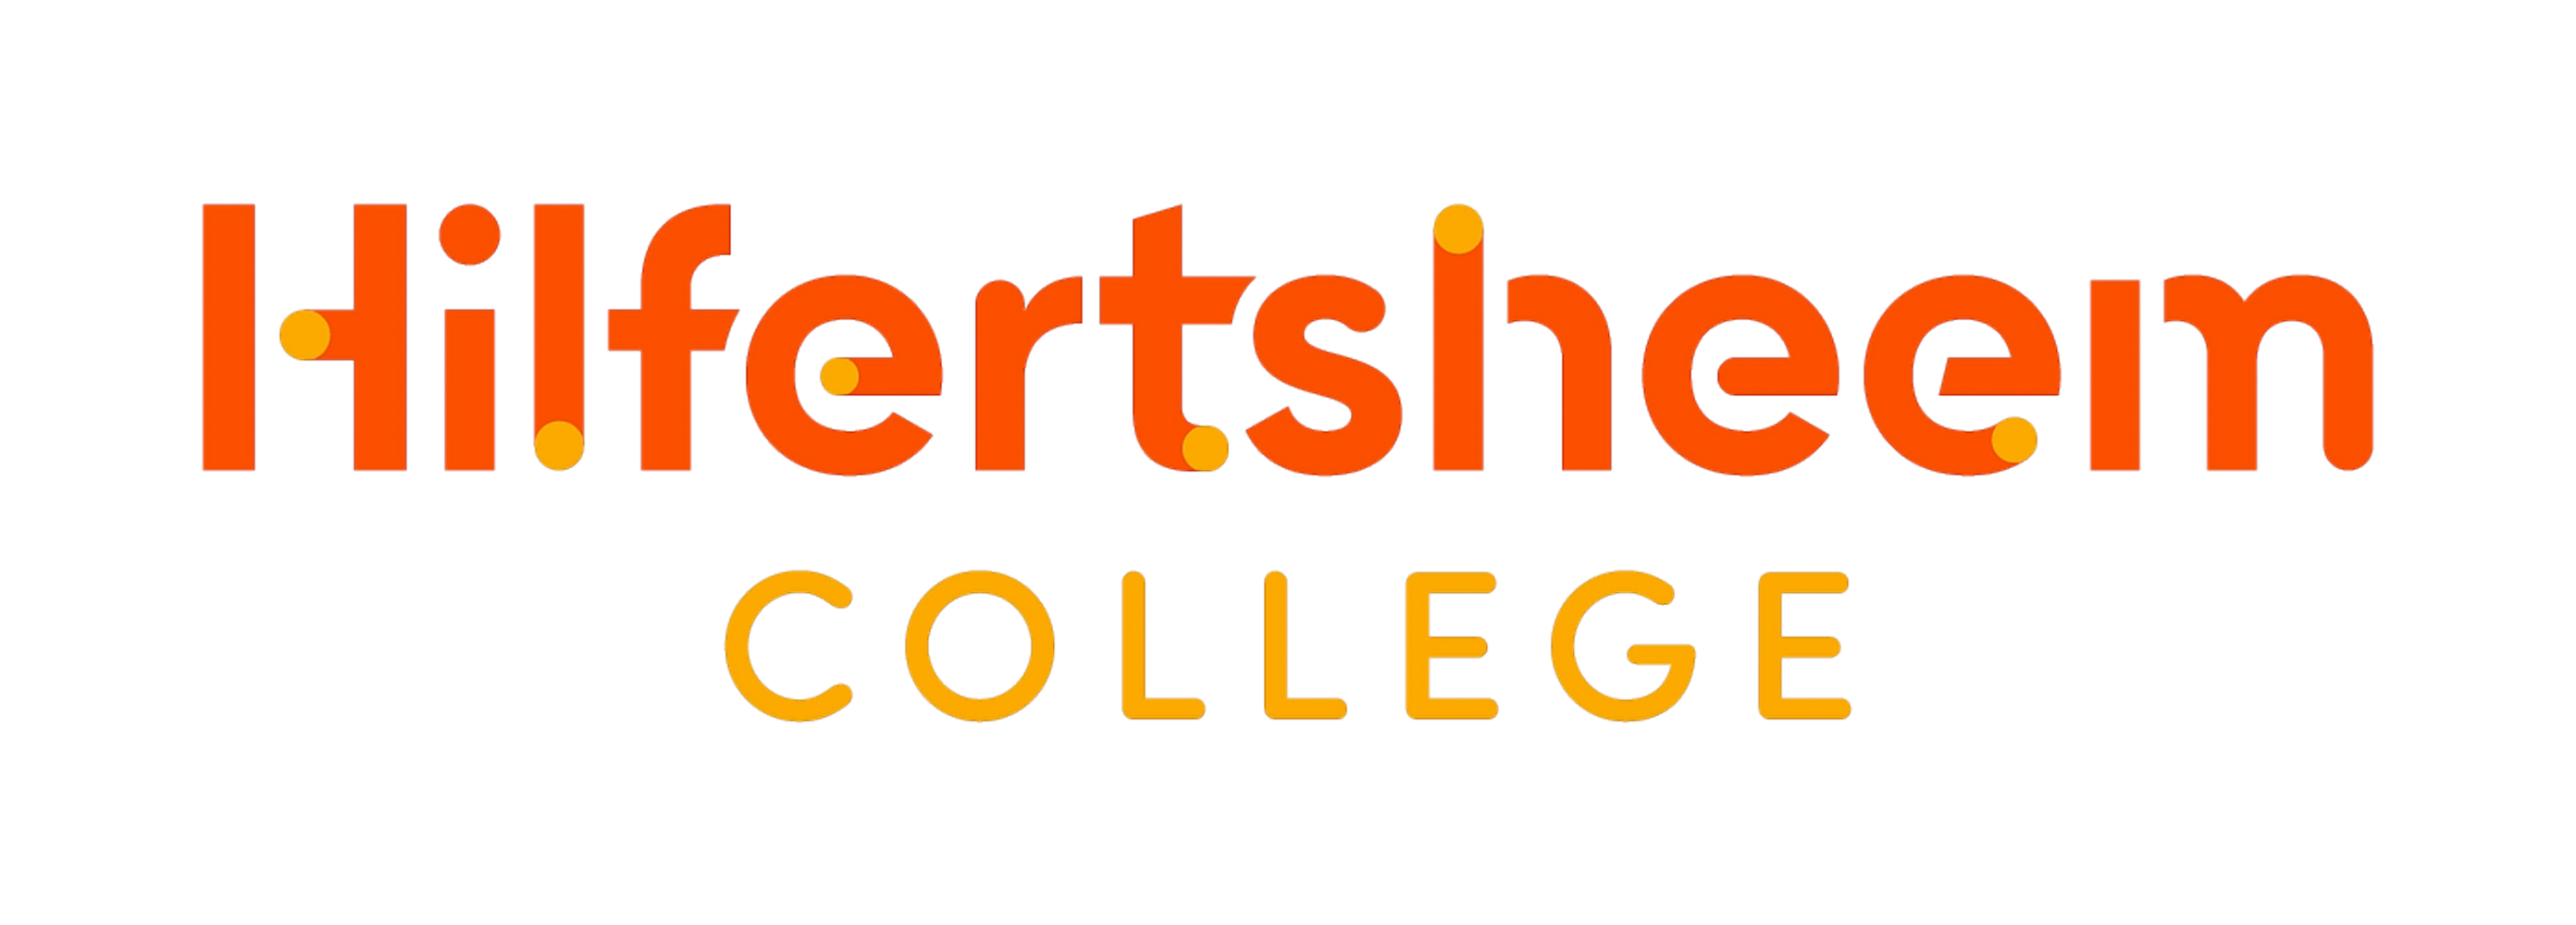 Hilfertsheem College logo